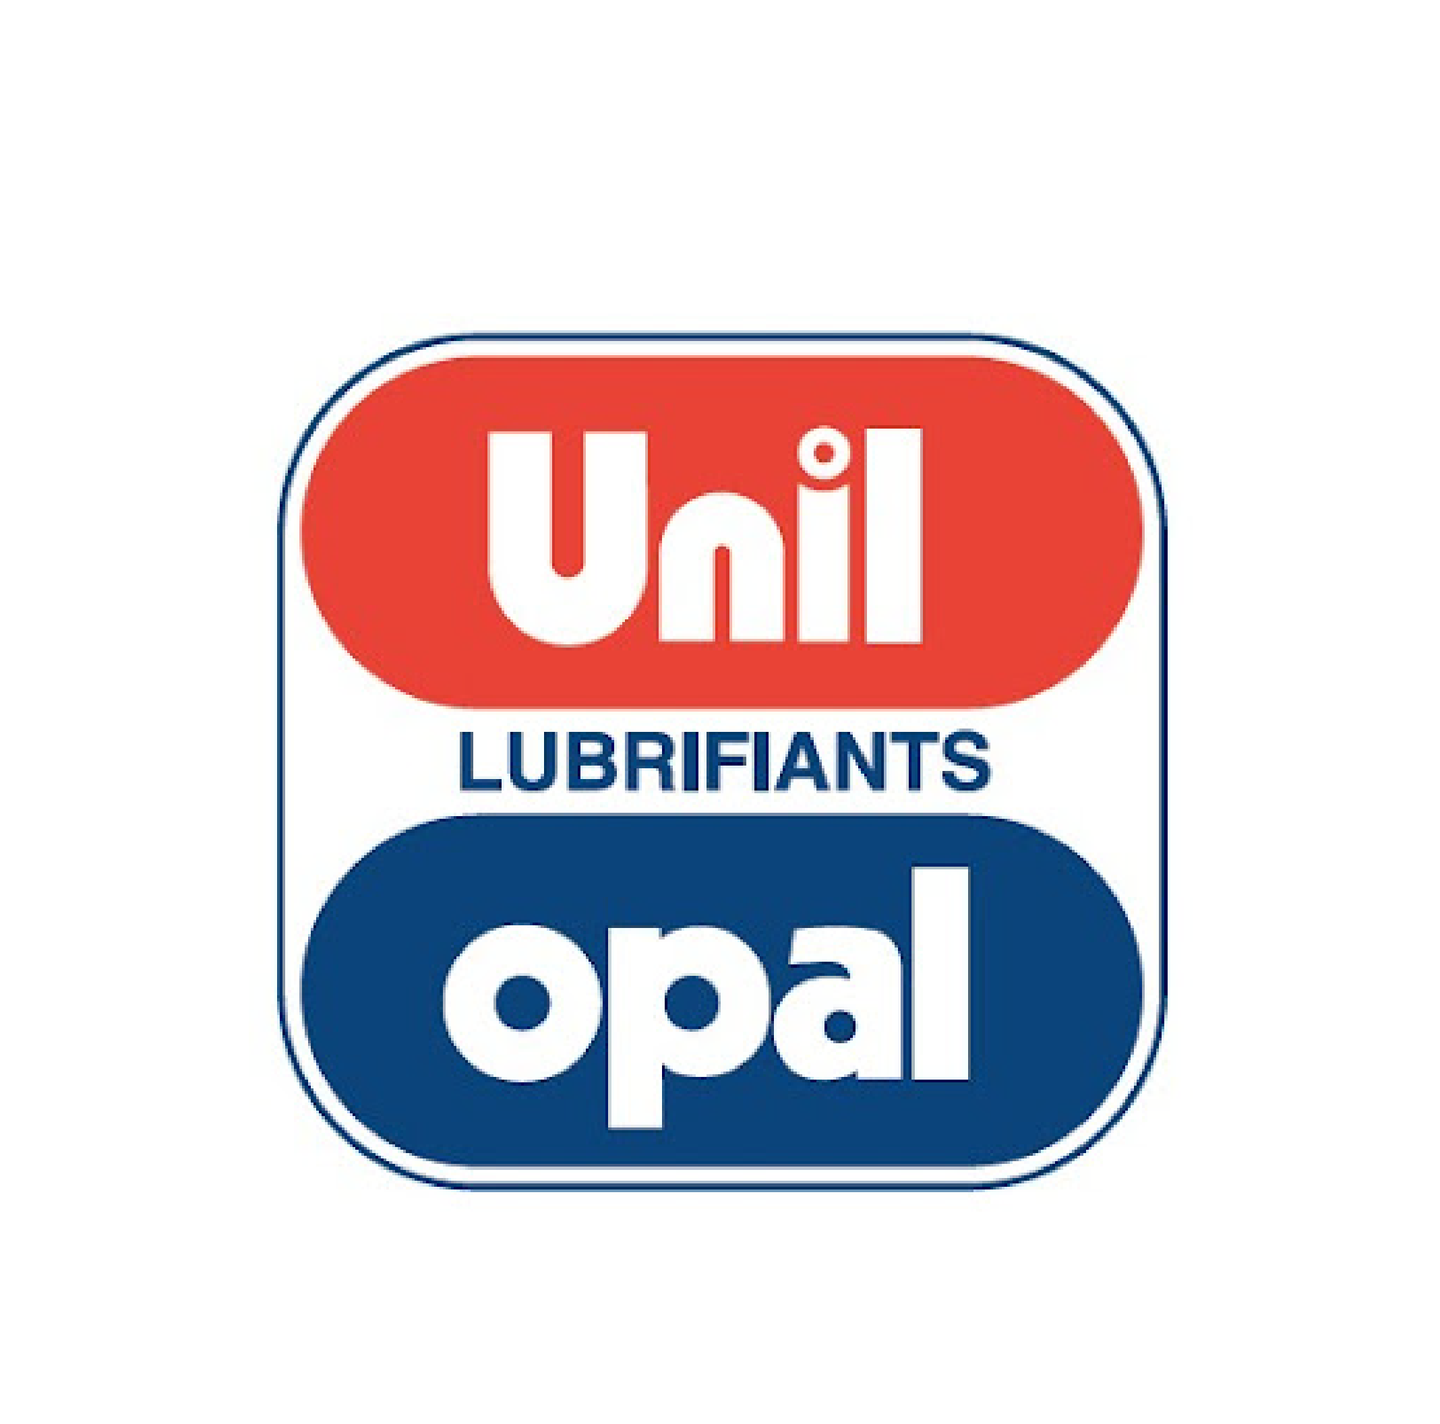 unil-opal